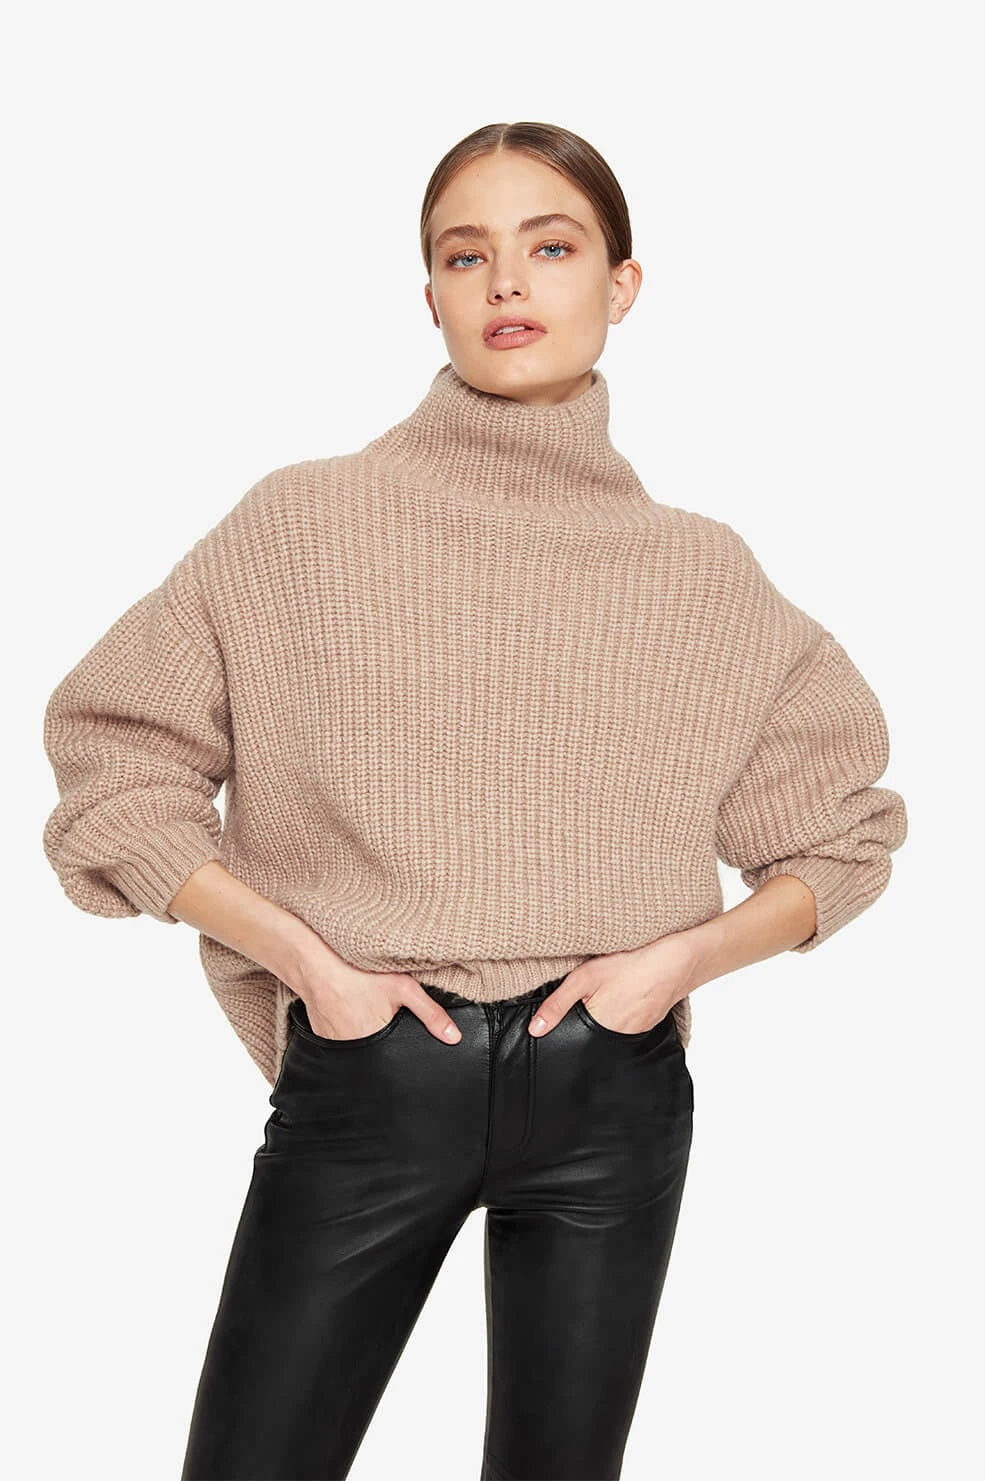 Anine Bing - Sydney Sweater in Camel